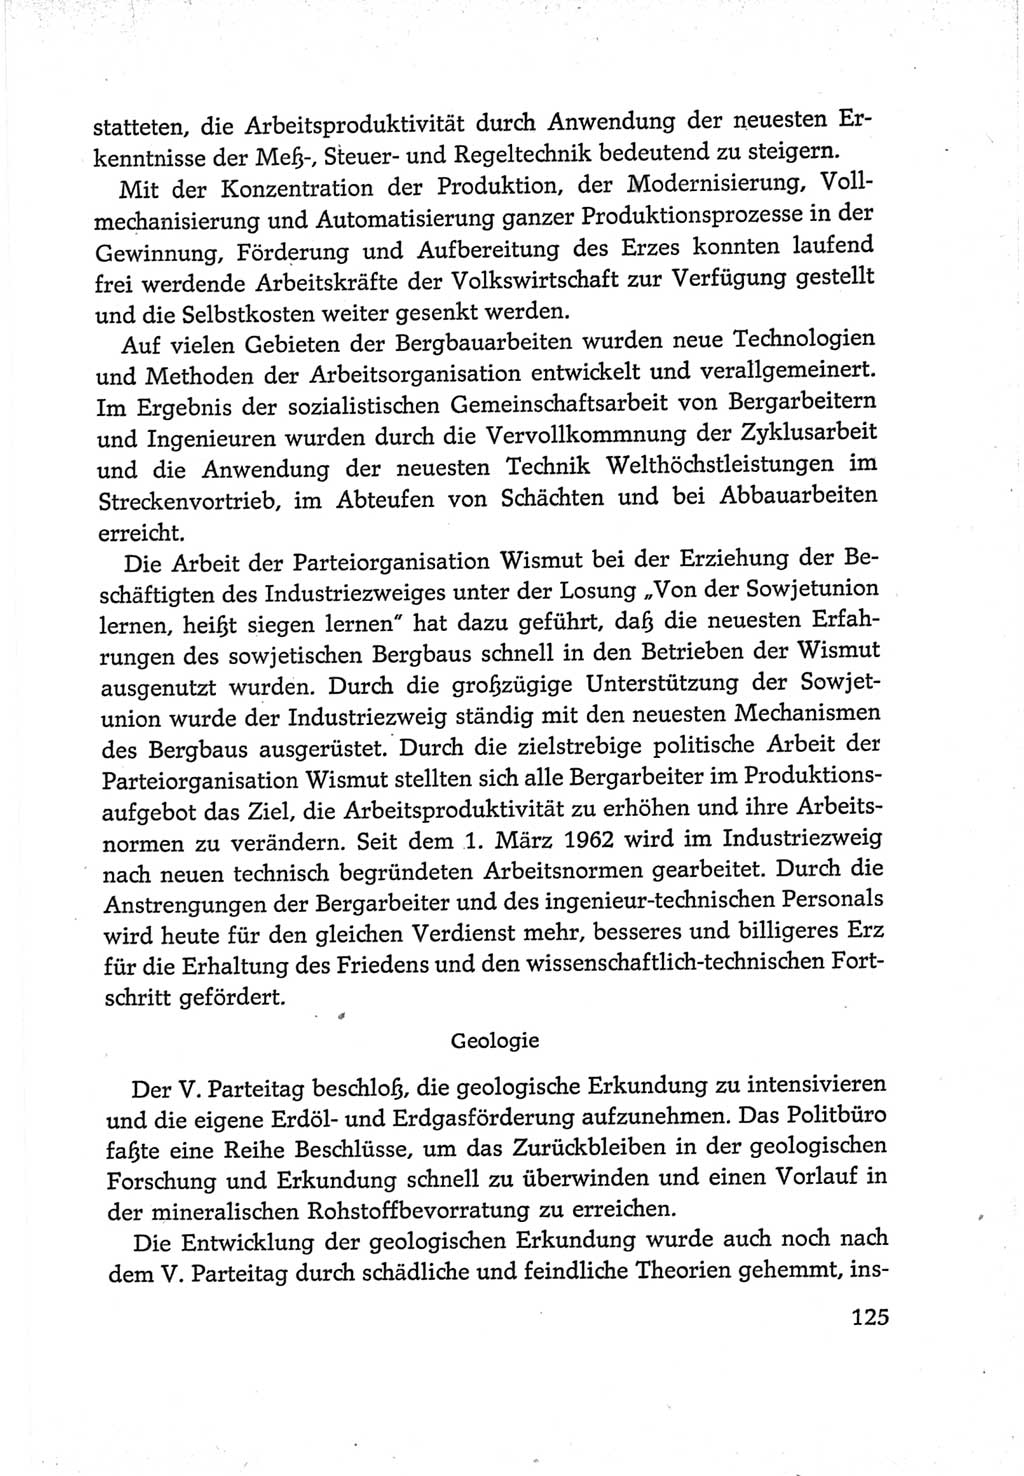 Protokoll der Verhandlungen des Ⅵ. Parteitages der Sozialistischen Einheitspartei Deutschlands (SED) [Deutsche Demokratische Republik (DDR)] 1963, Band Ⅳ, Seite 125 (Prot. Verh. Ⅵ. PT SED DDR 1963, Bd. Ⅳ, S. 125)